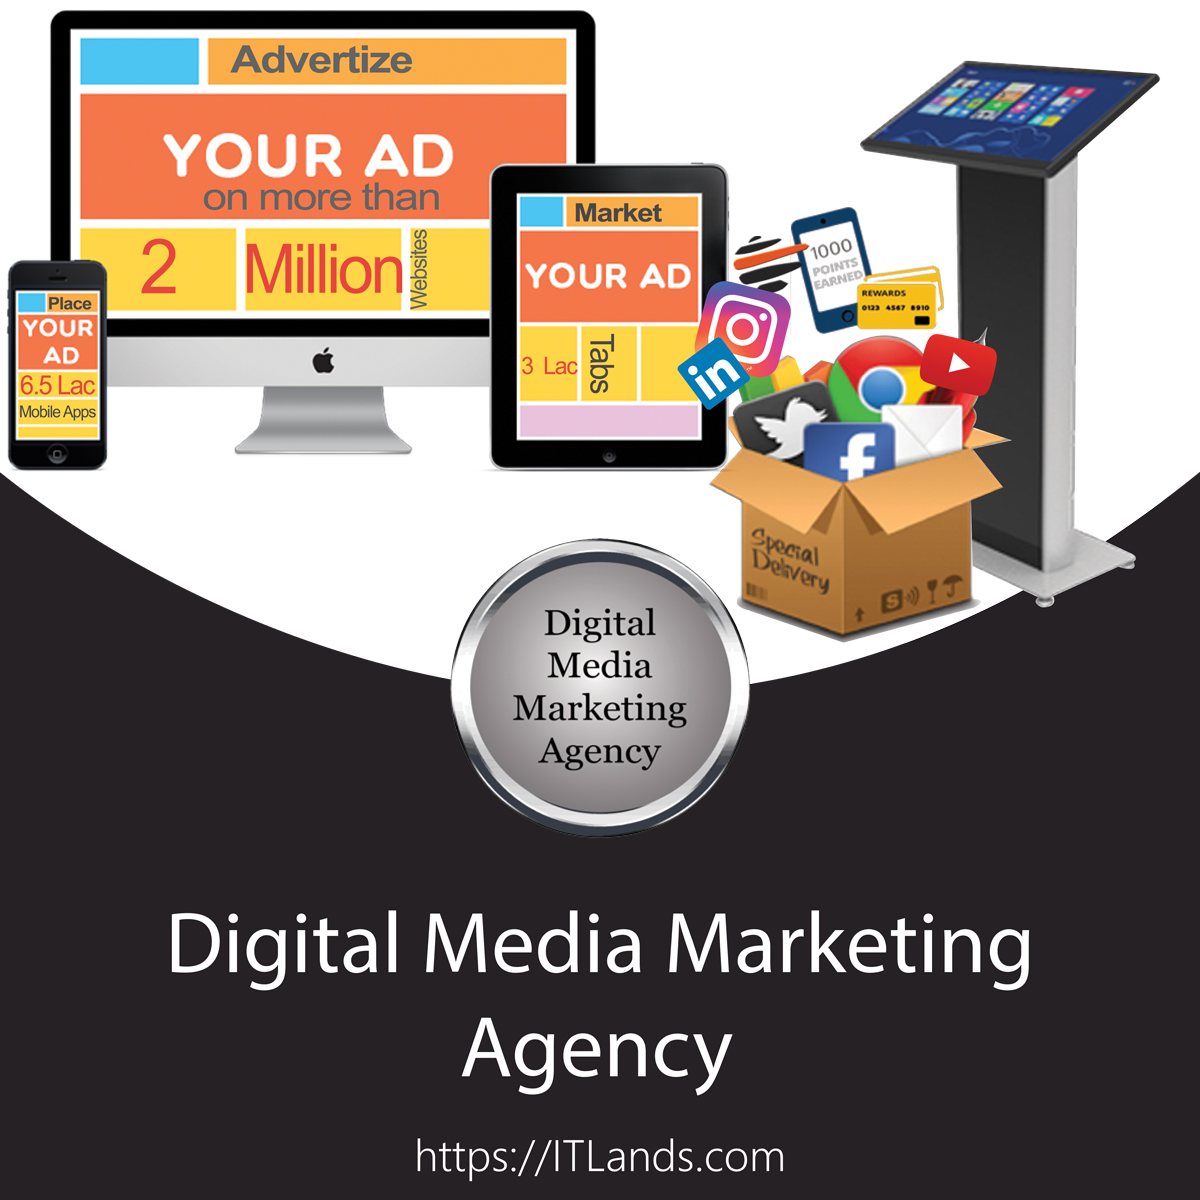 ITLands-Digital-Media-Marketing-Agency-Banner